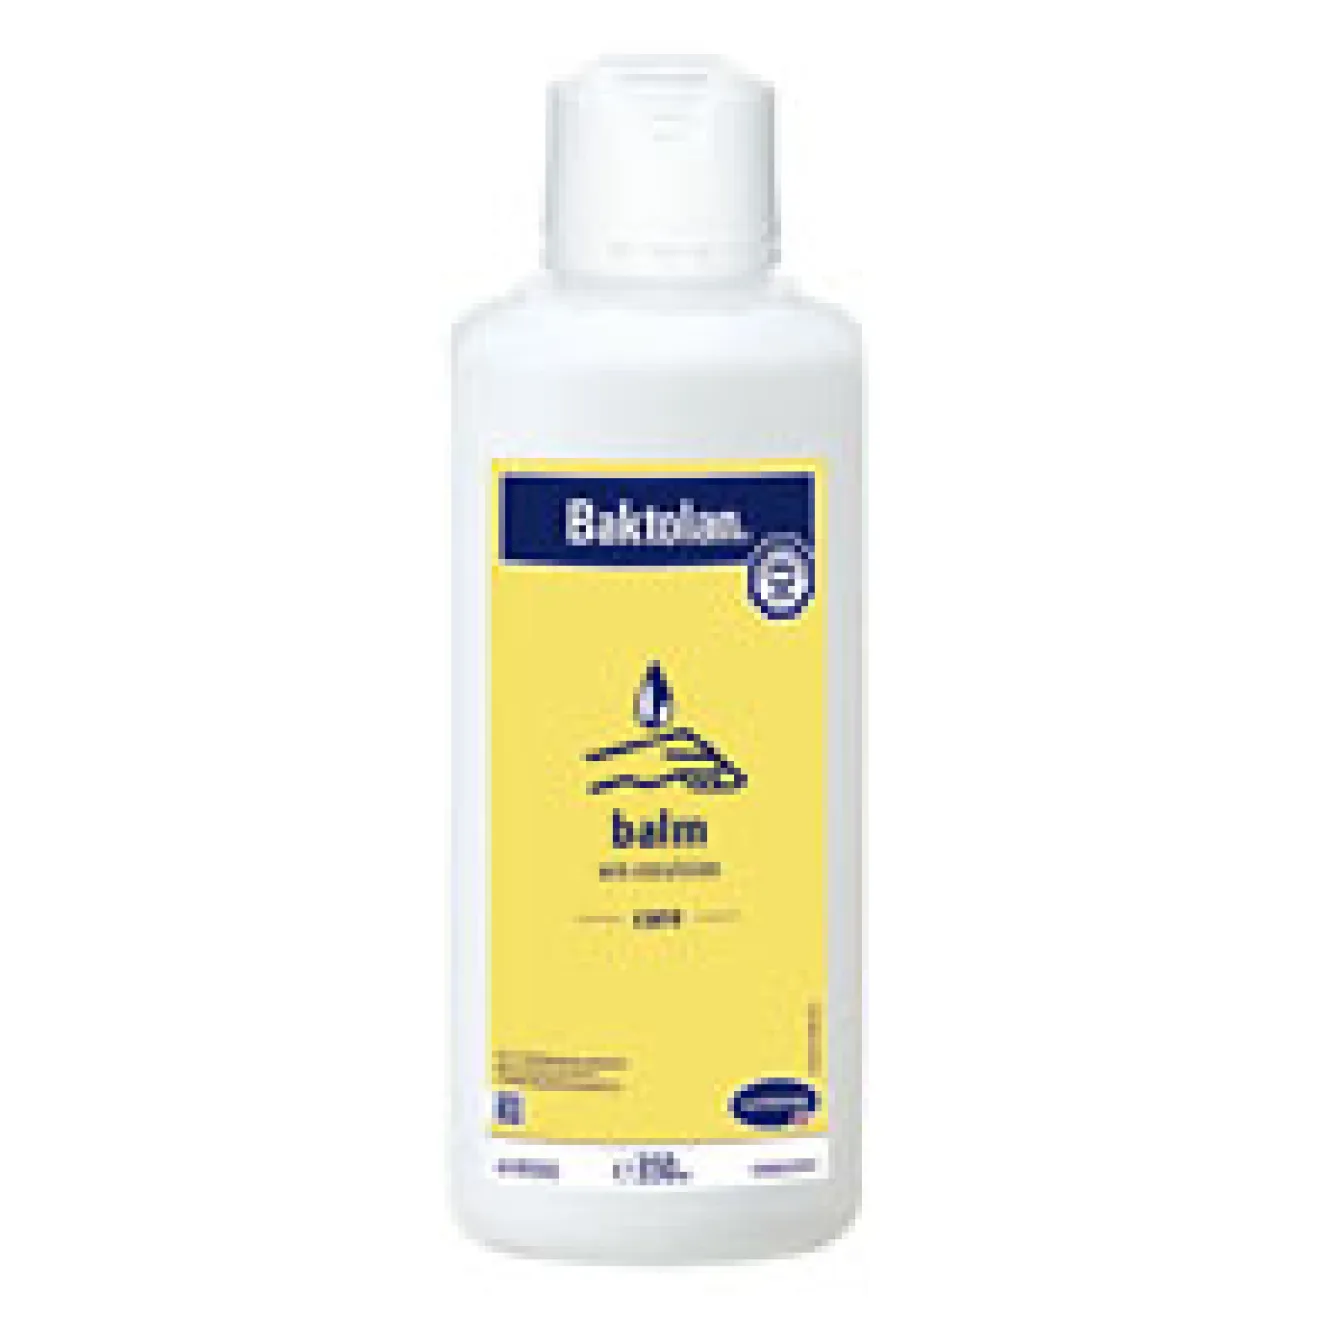 Baktolan Balm 350 ml